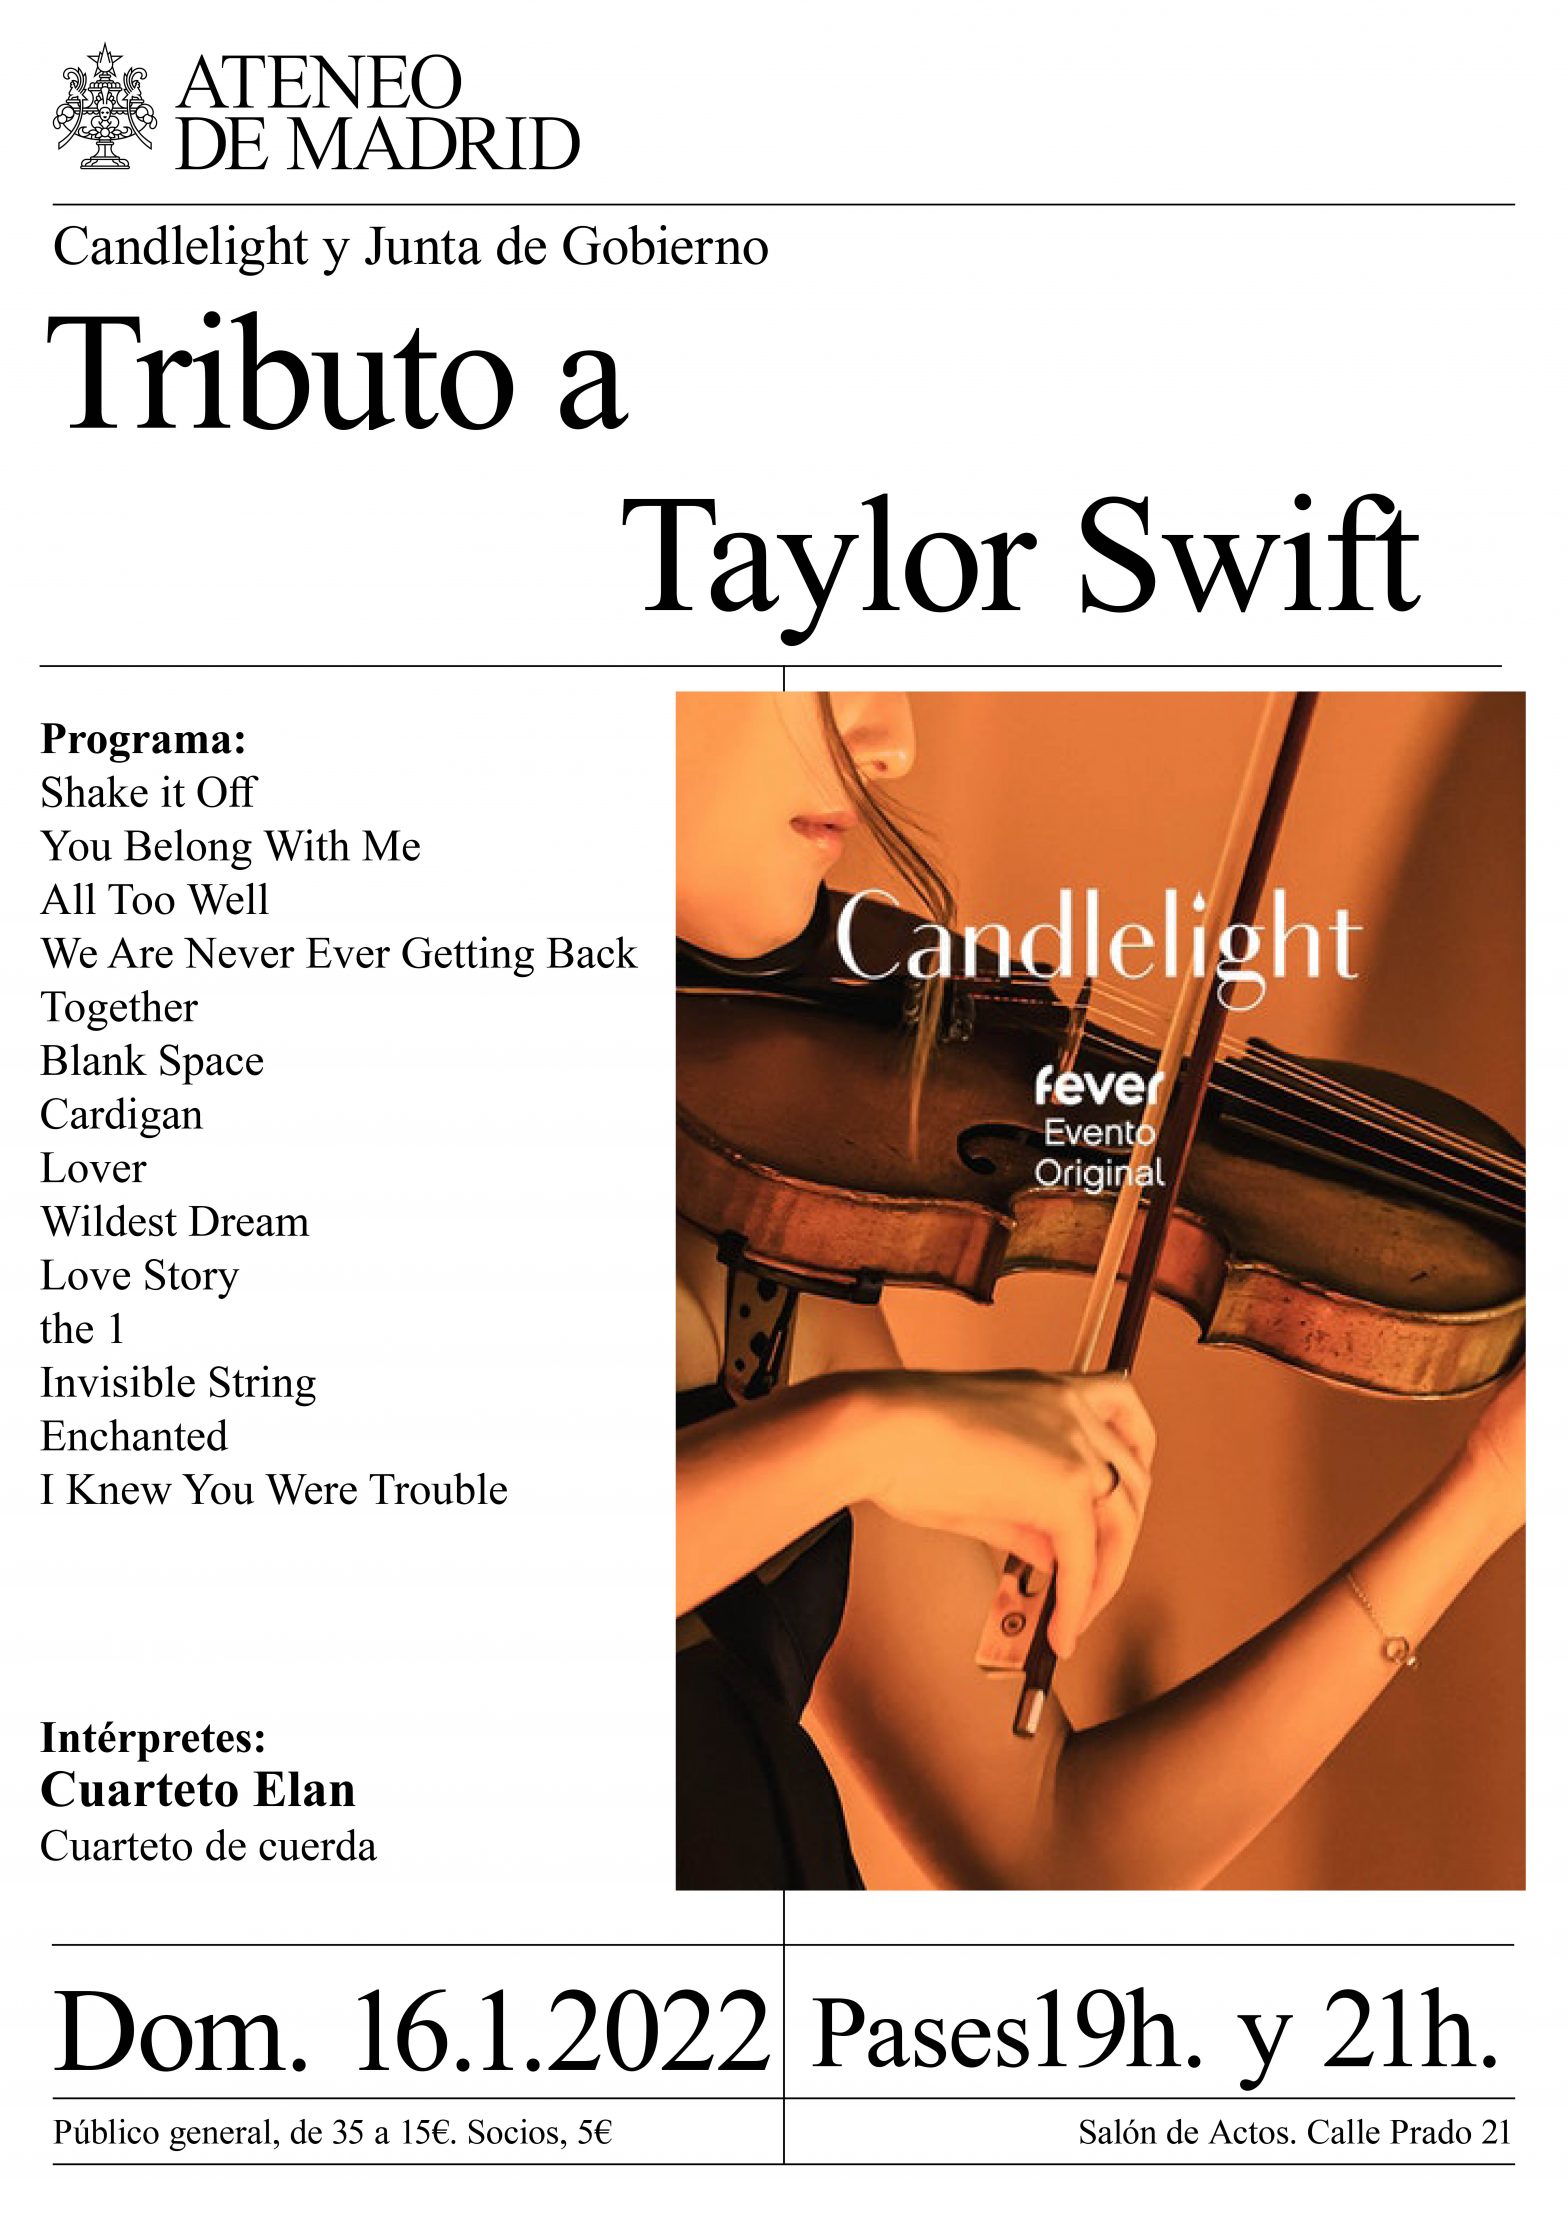 Candlelight: Tributo a Taylor Swift en el Ateneo de Madrid